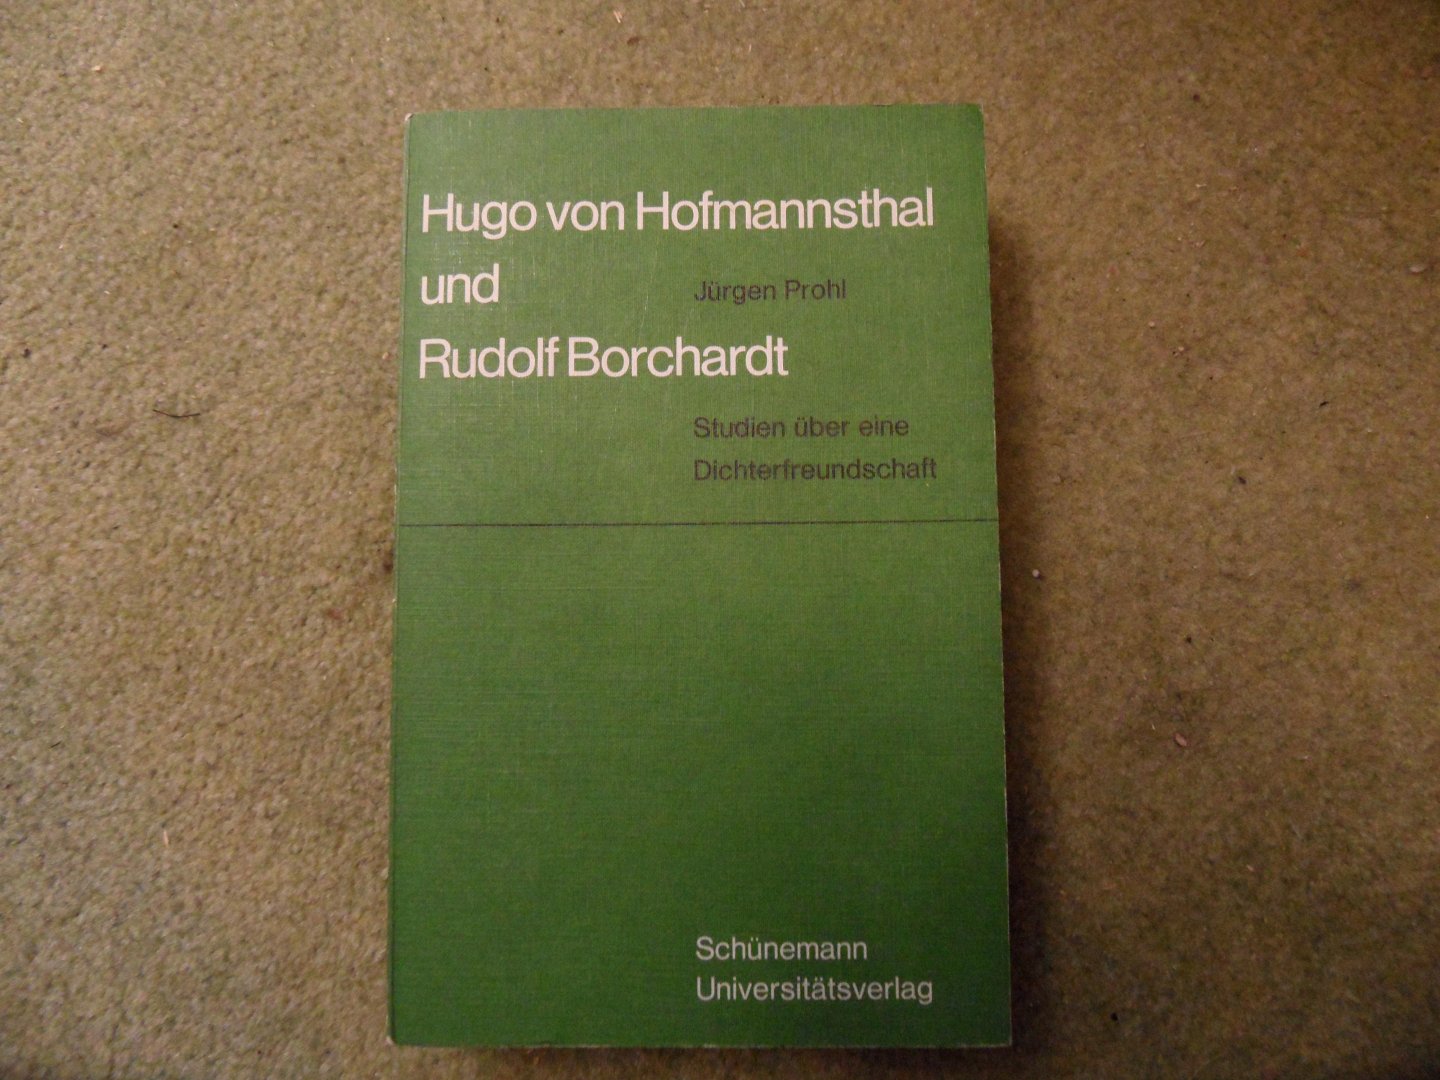 Prohl, Jürgen - Hugo von Hofmannsthal und Rudolf Borchardt. Studien über eine Dichterfreundschaft